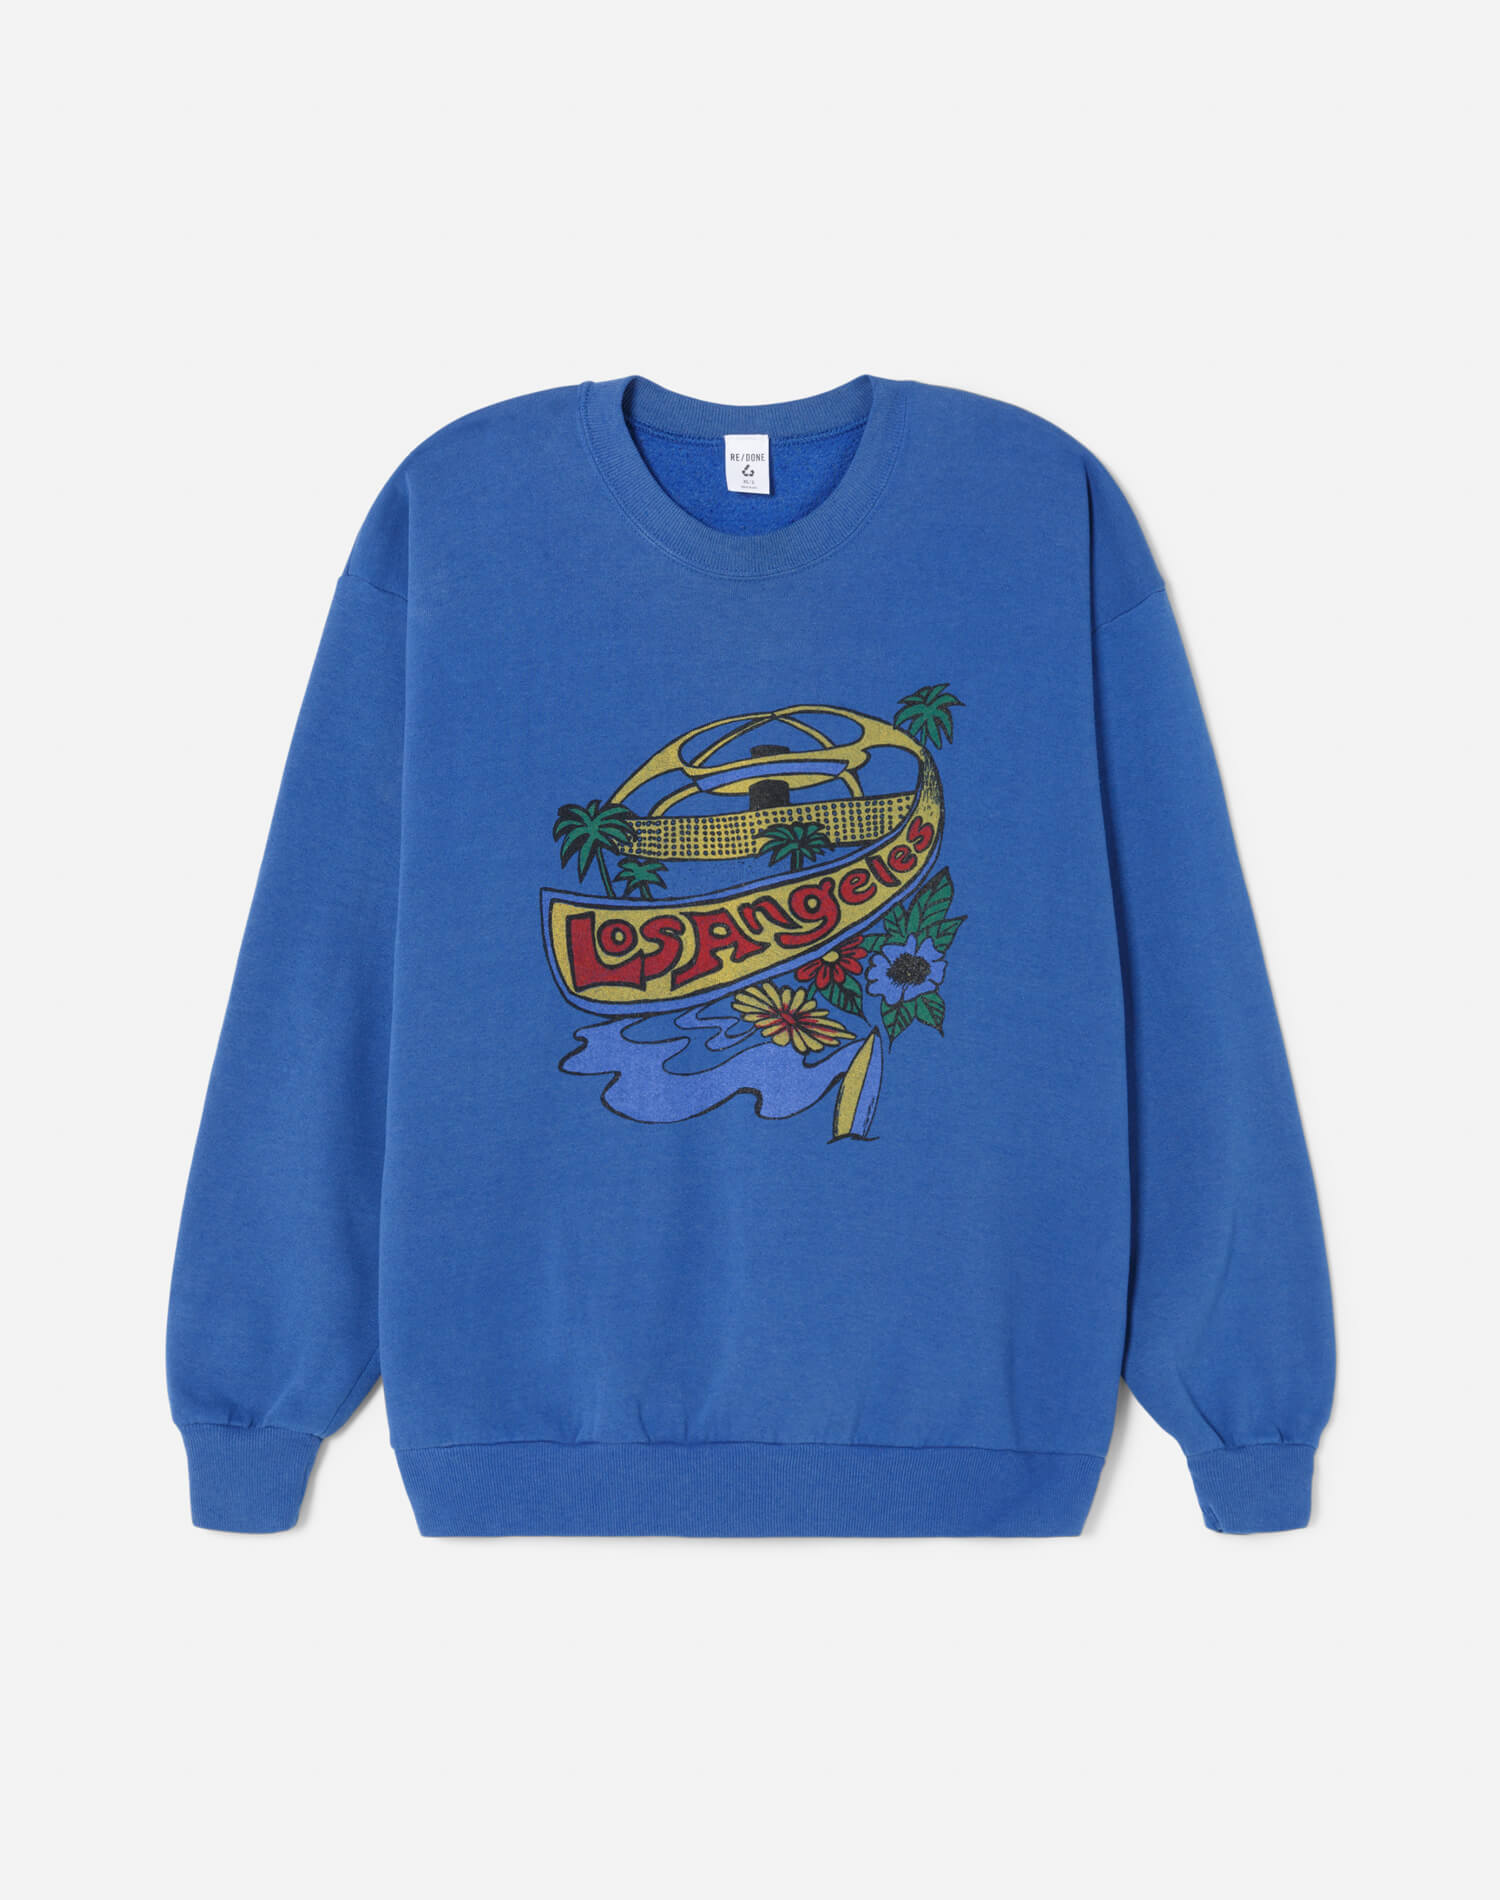 Upcycled "LAX" Sweatshirt - Blue